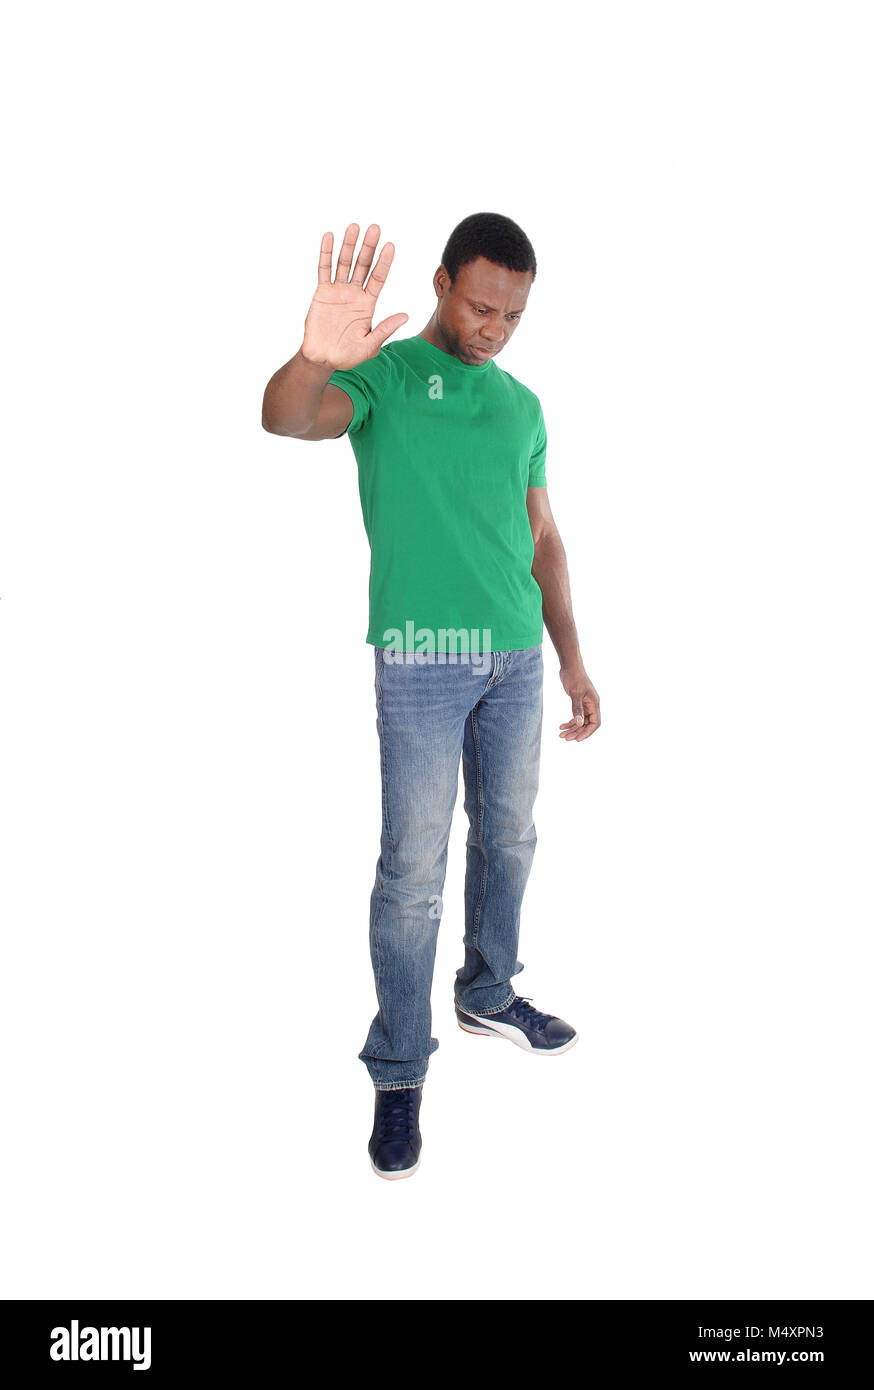 Ein schöner afrikanische amerikanische Mann im grünen Poloshirt seine Hand heben und sagt halt, nicht bewegt, auf weißem Hintergrund Stockfoto